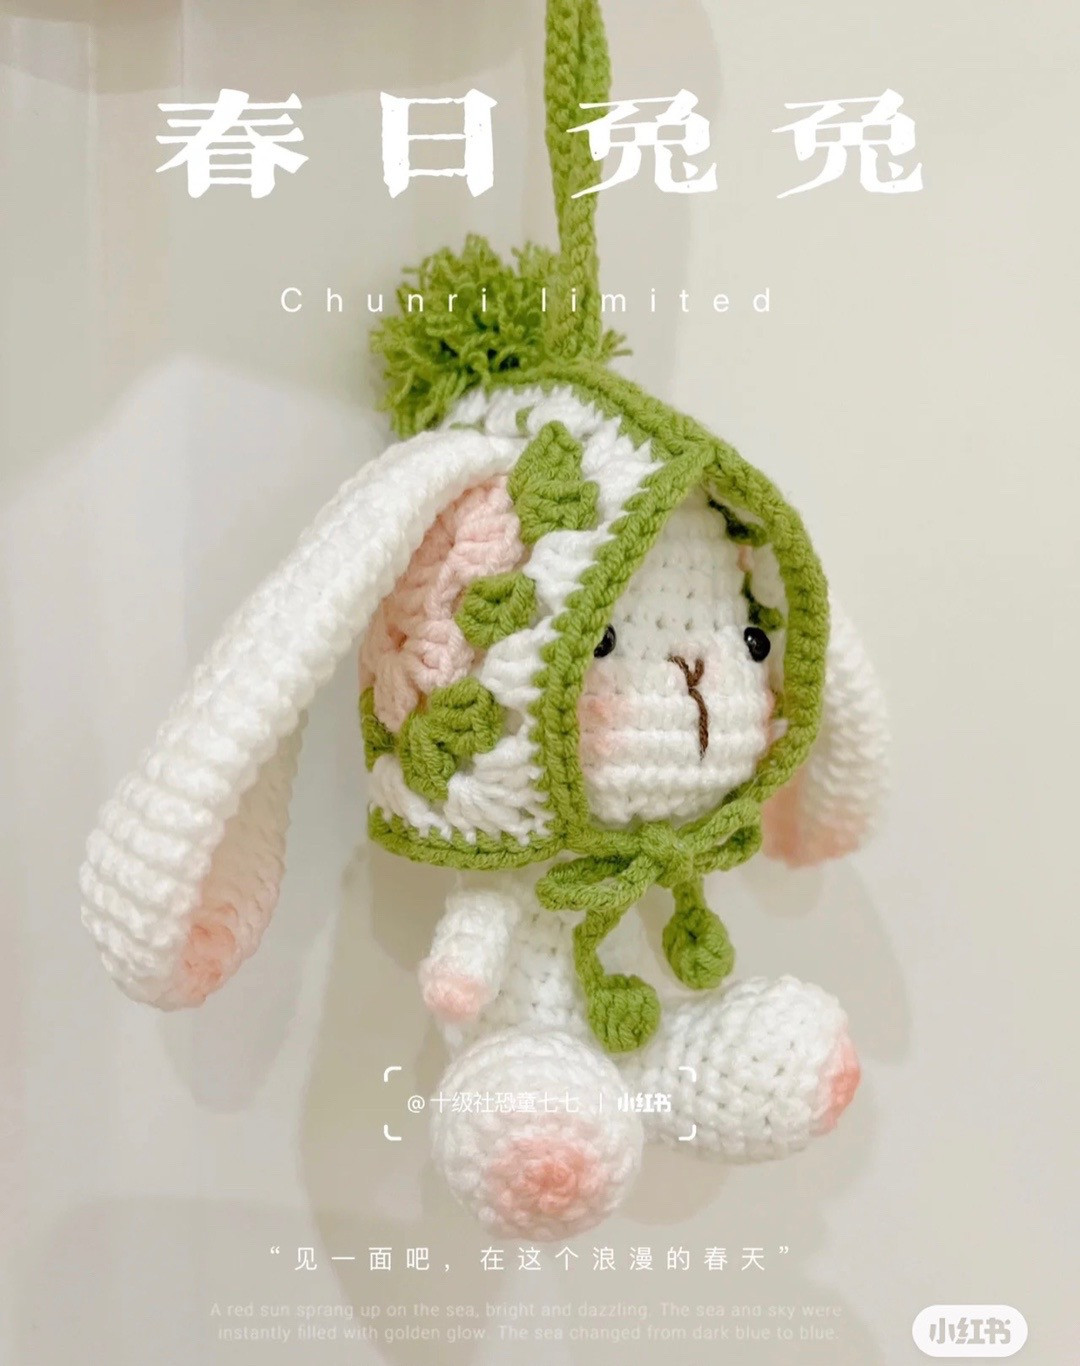 Long-eared white rabbit wearing green hat crochet pattern